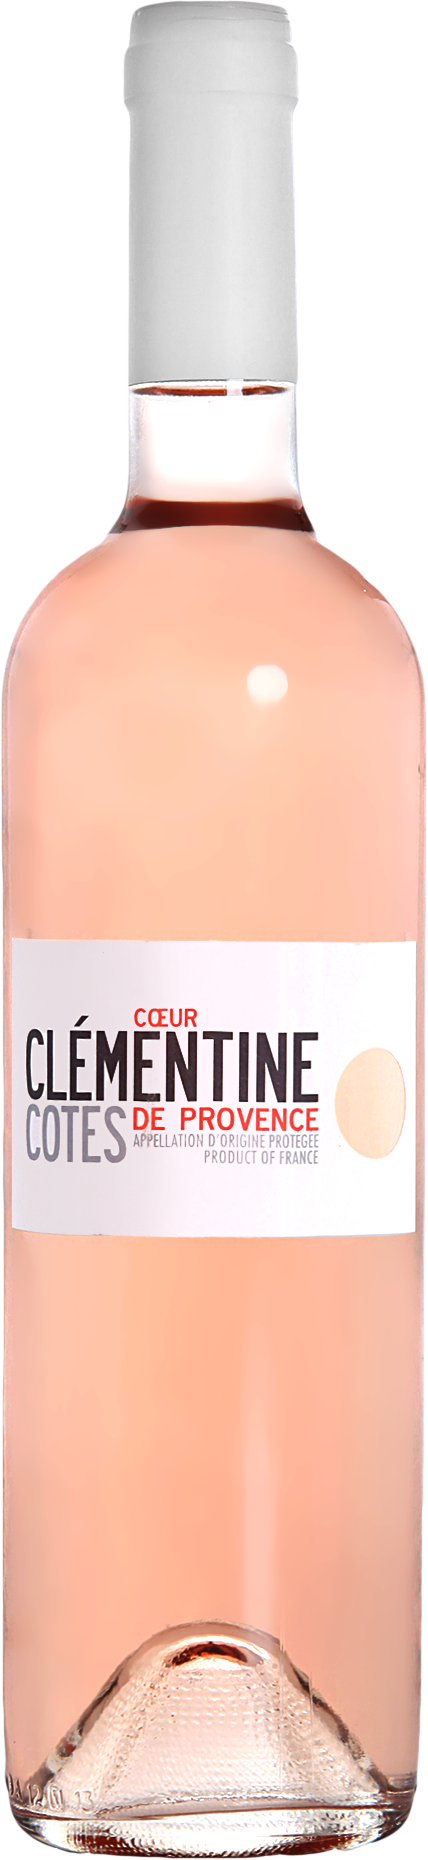 Coeur Clémentine Côtes de Provence Rosé 2021